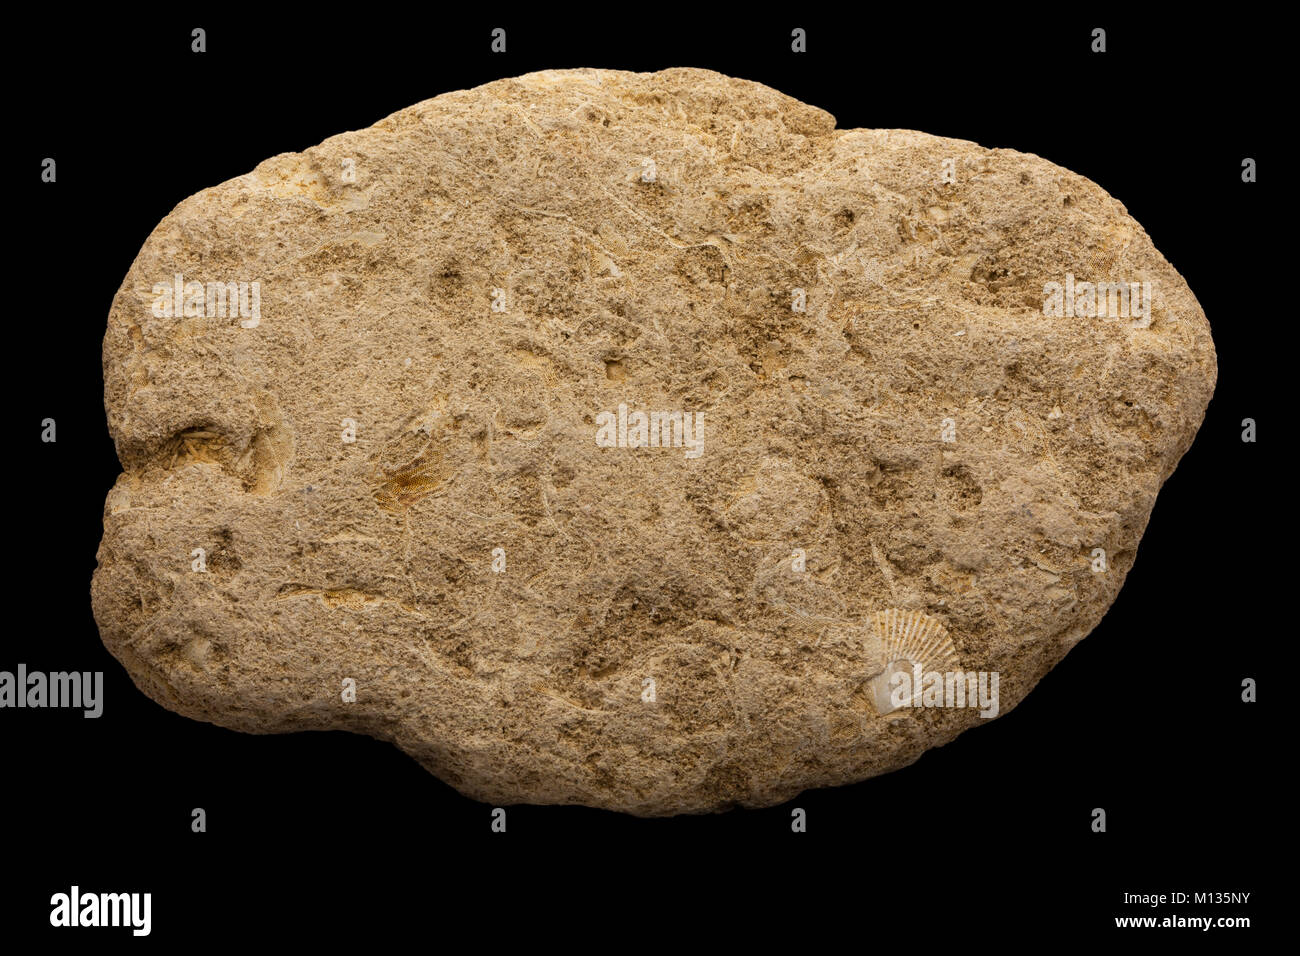 Dettaglio del bryozoan marine fossili contenenti campioni multipli Foto Stock